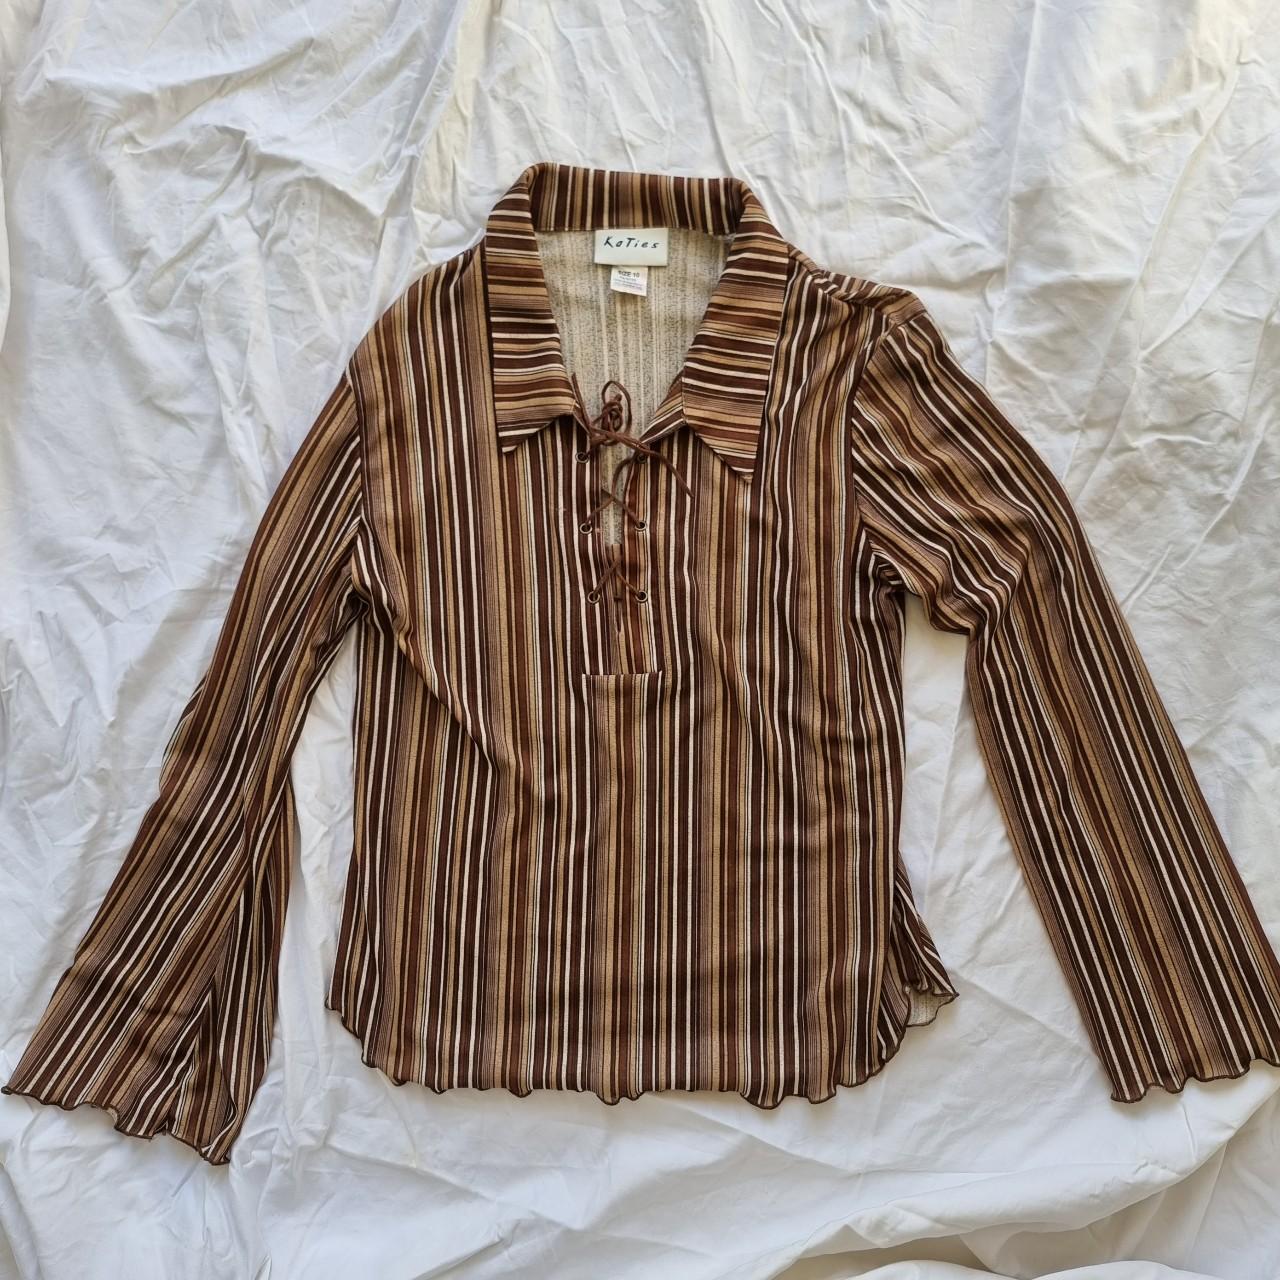 Vintage 90s Katies long sleeve brown striped top... - Depop